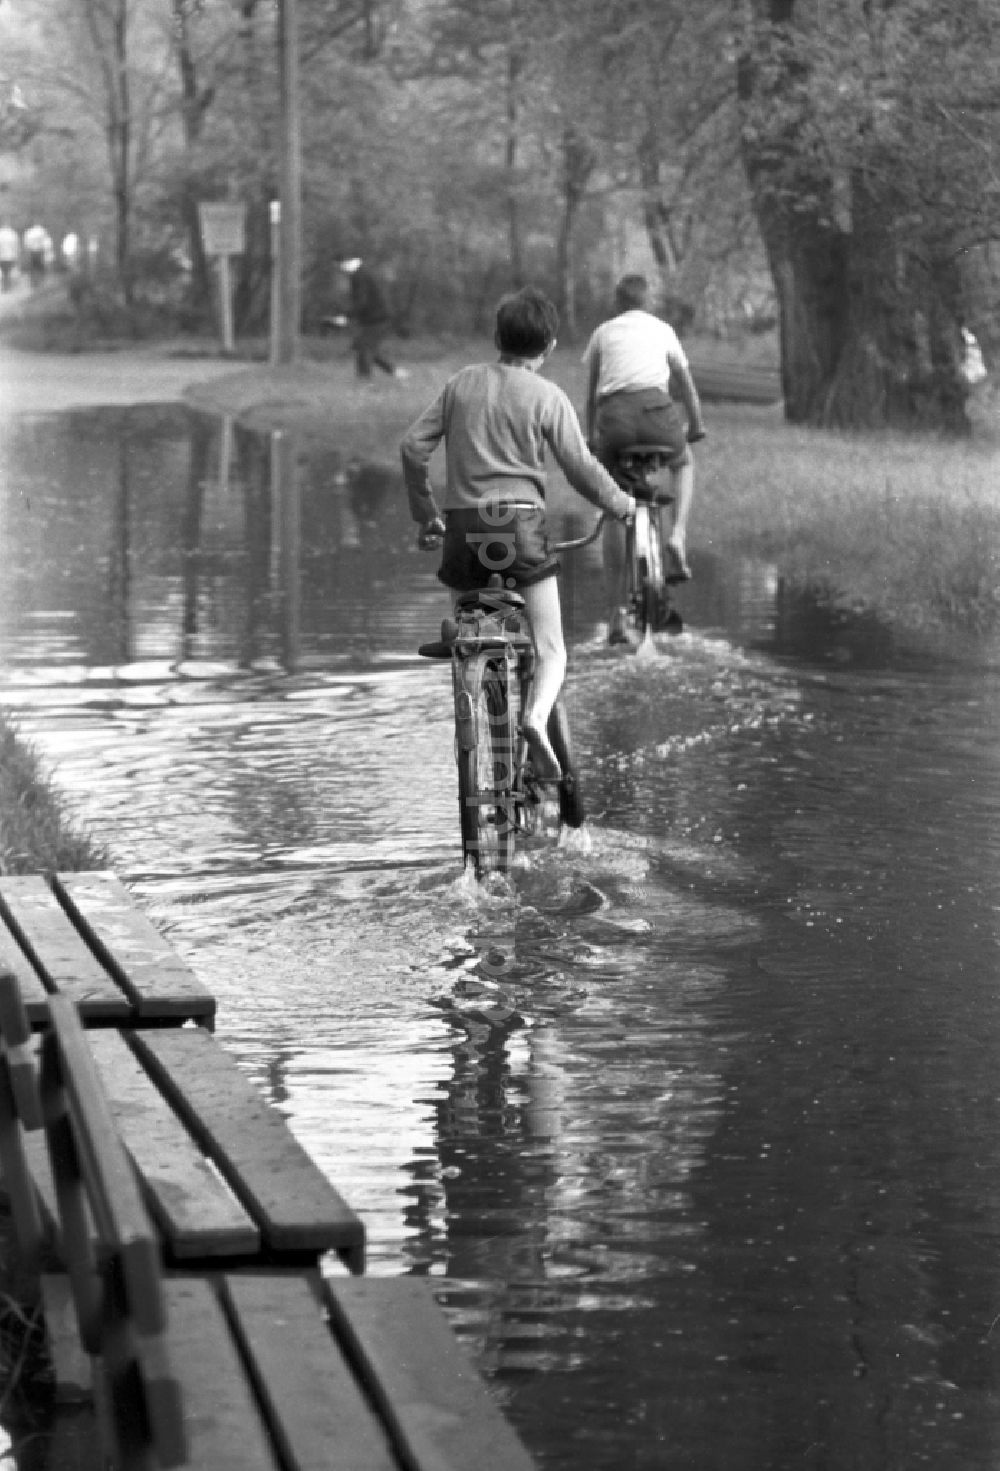 DDR-Fotoarchiv: Dessau - 2 Jungen fahren mit ihren Fahrrädern durch eine große Pfütze im Stadtpark in Dessau in Sachsen - Anhalt